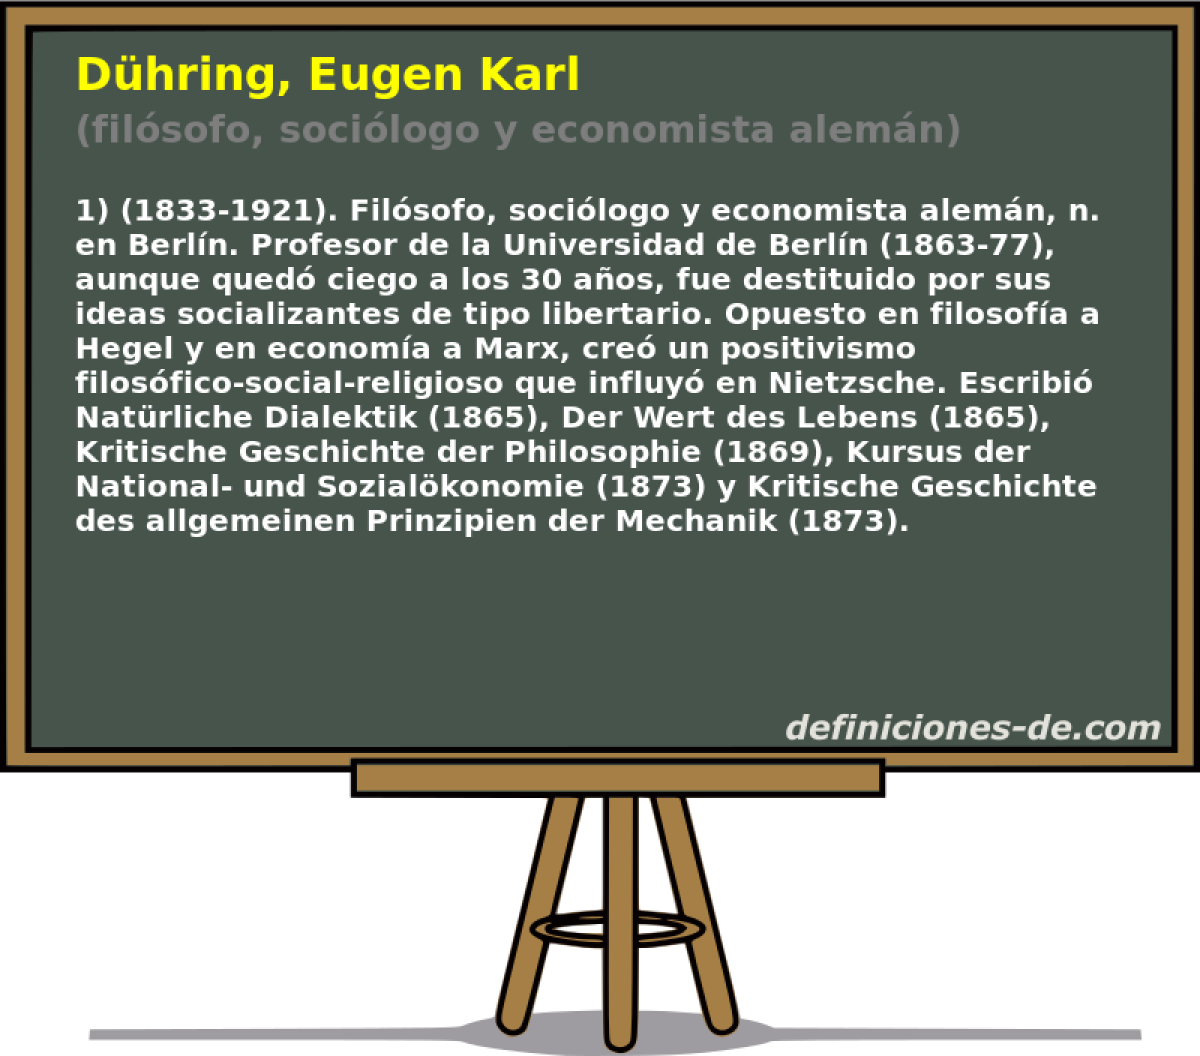 Dhring, Eugen Karl (filsofo, socilogo y economista alemn)